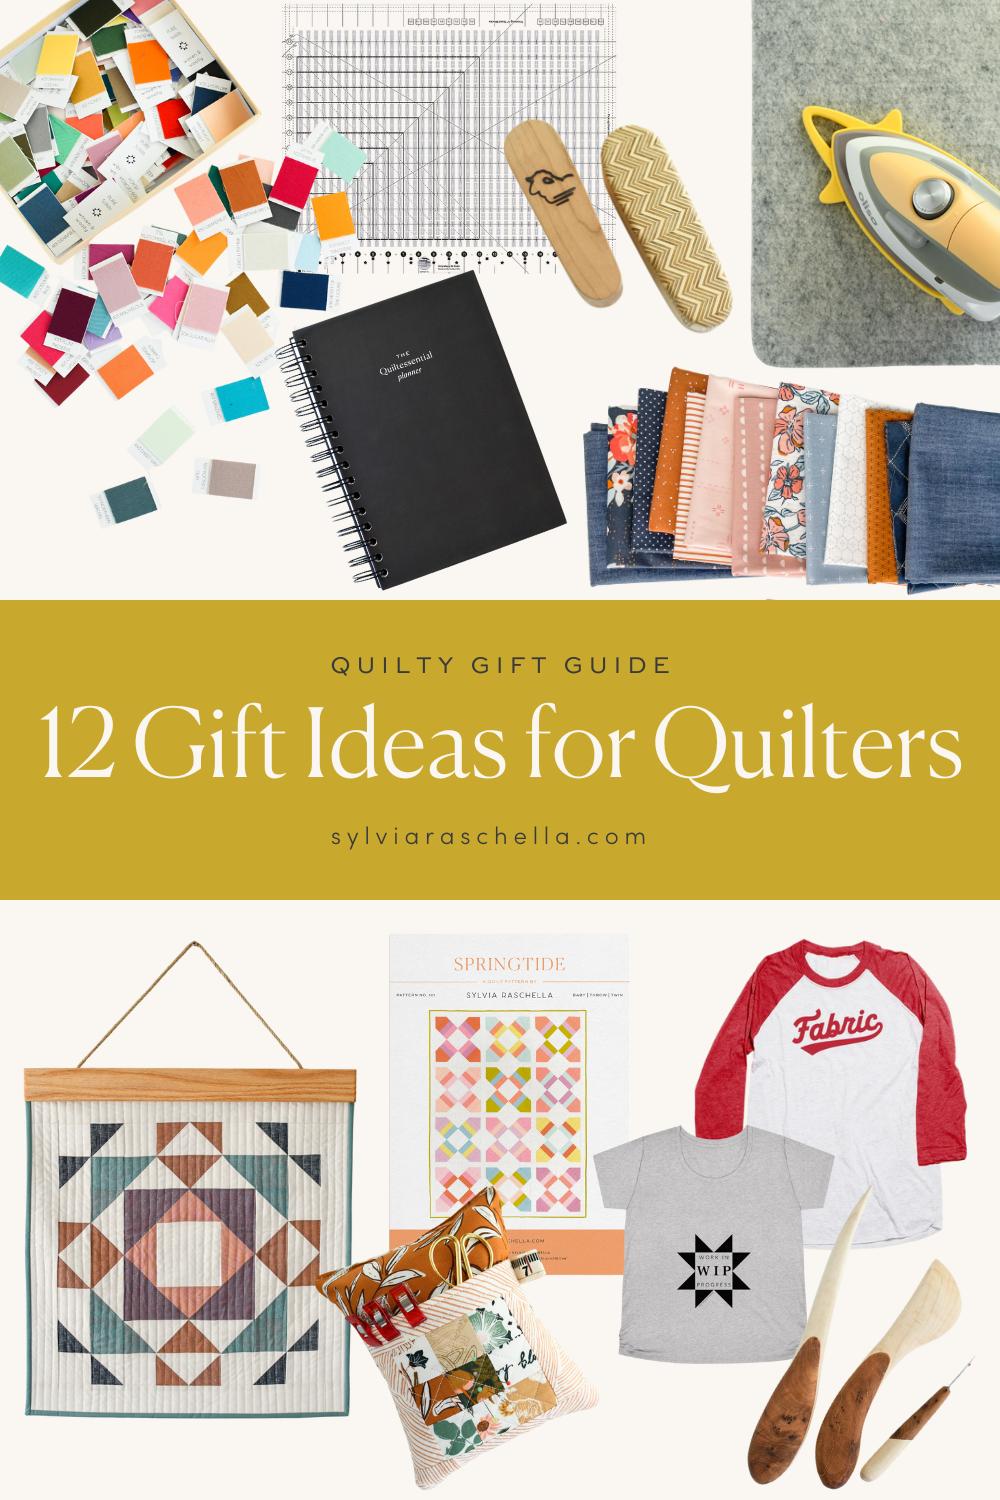 Quilty Gift Guide - Sylvia Raschella